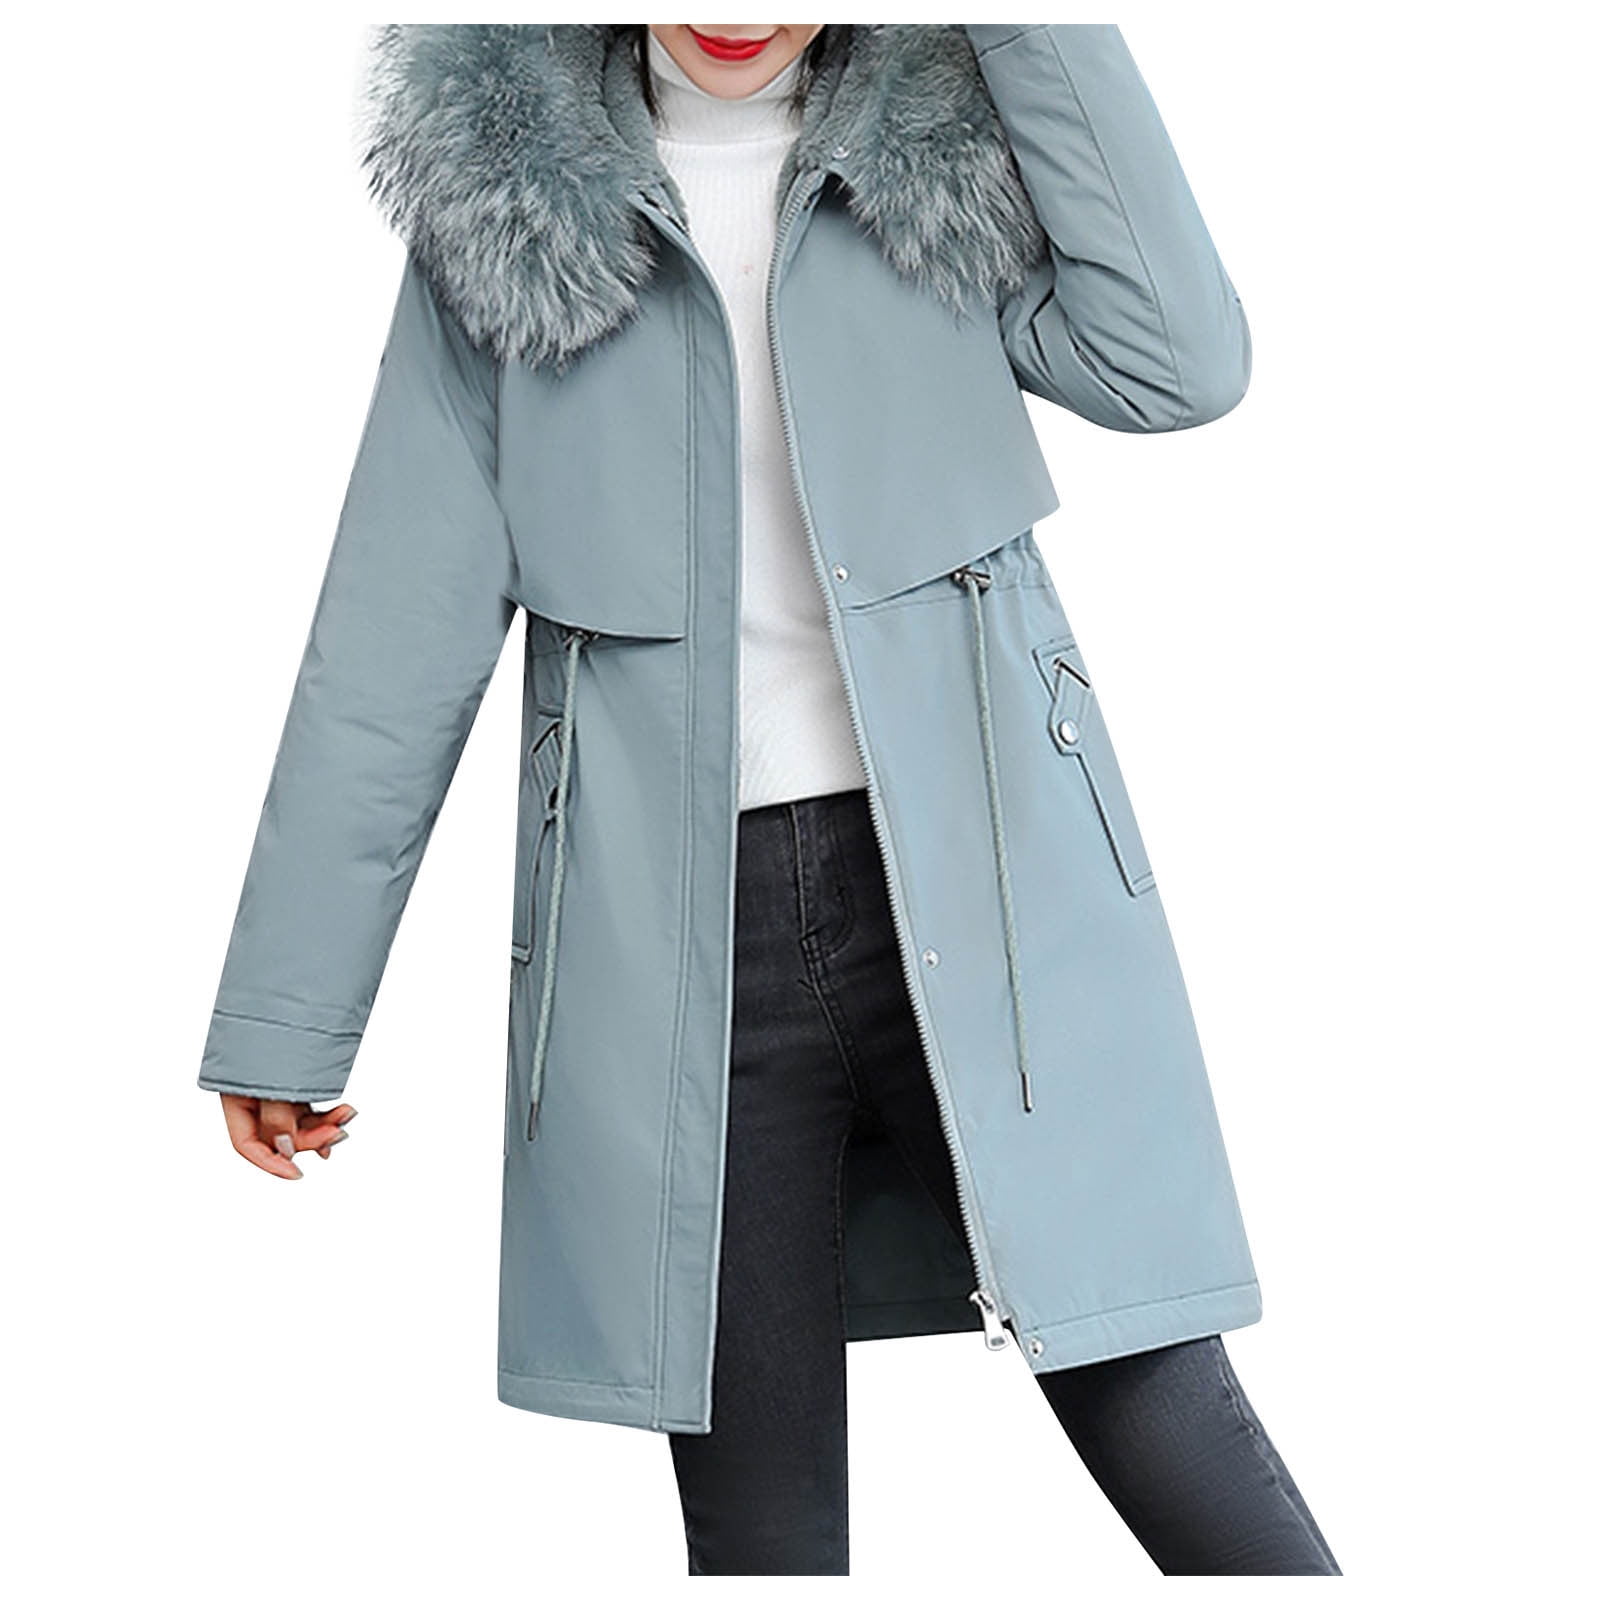 Miss Selfridge Khaki Green Faux Fur Lined Hooded Parka Winter Coat Size 6